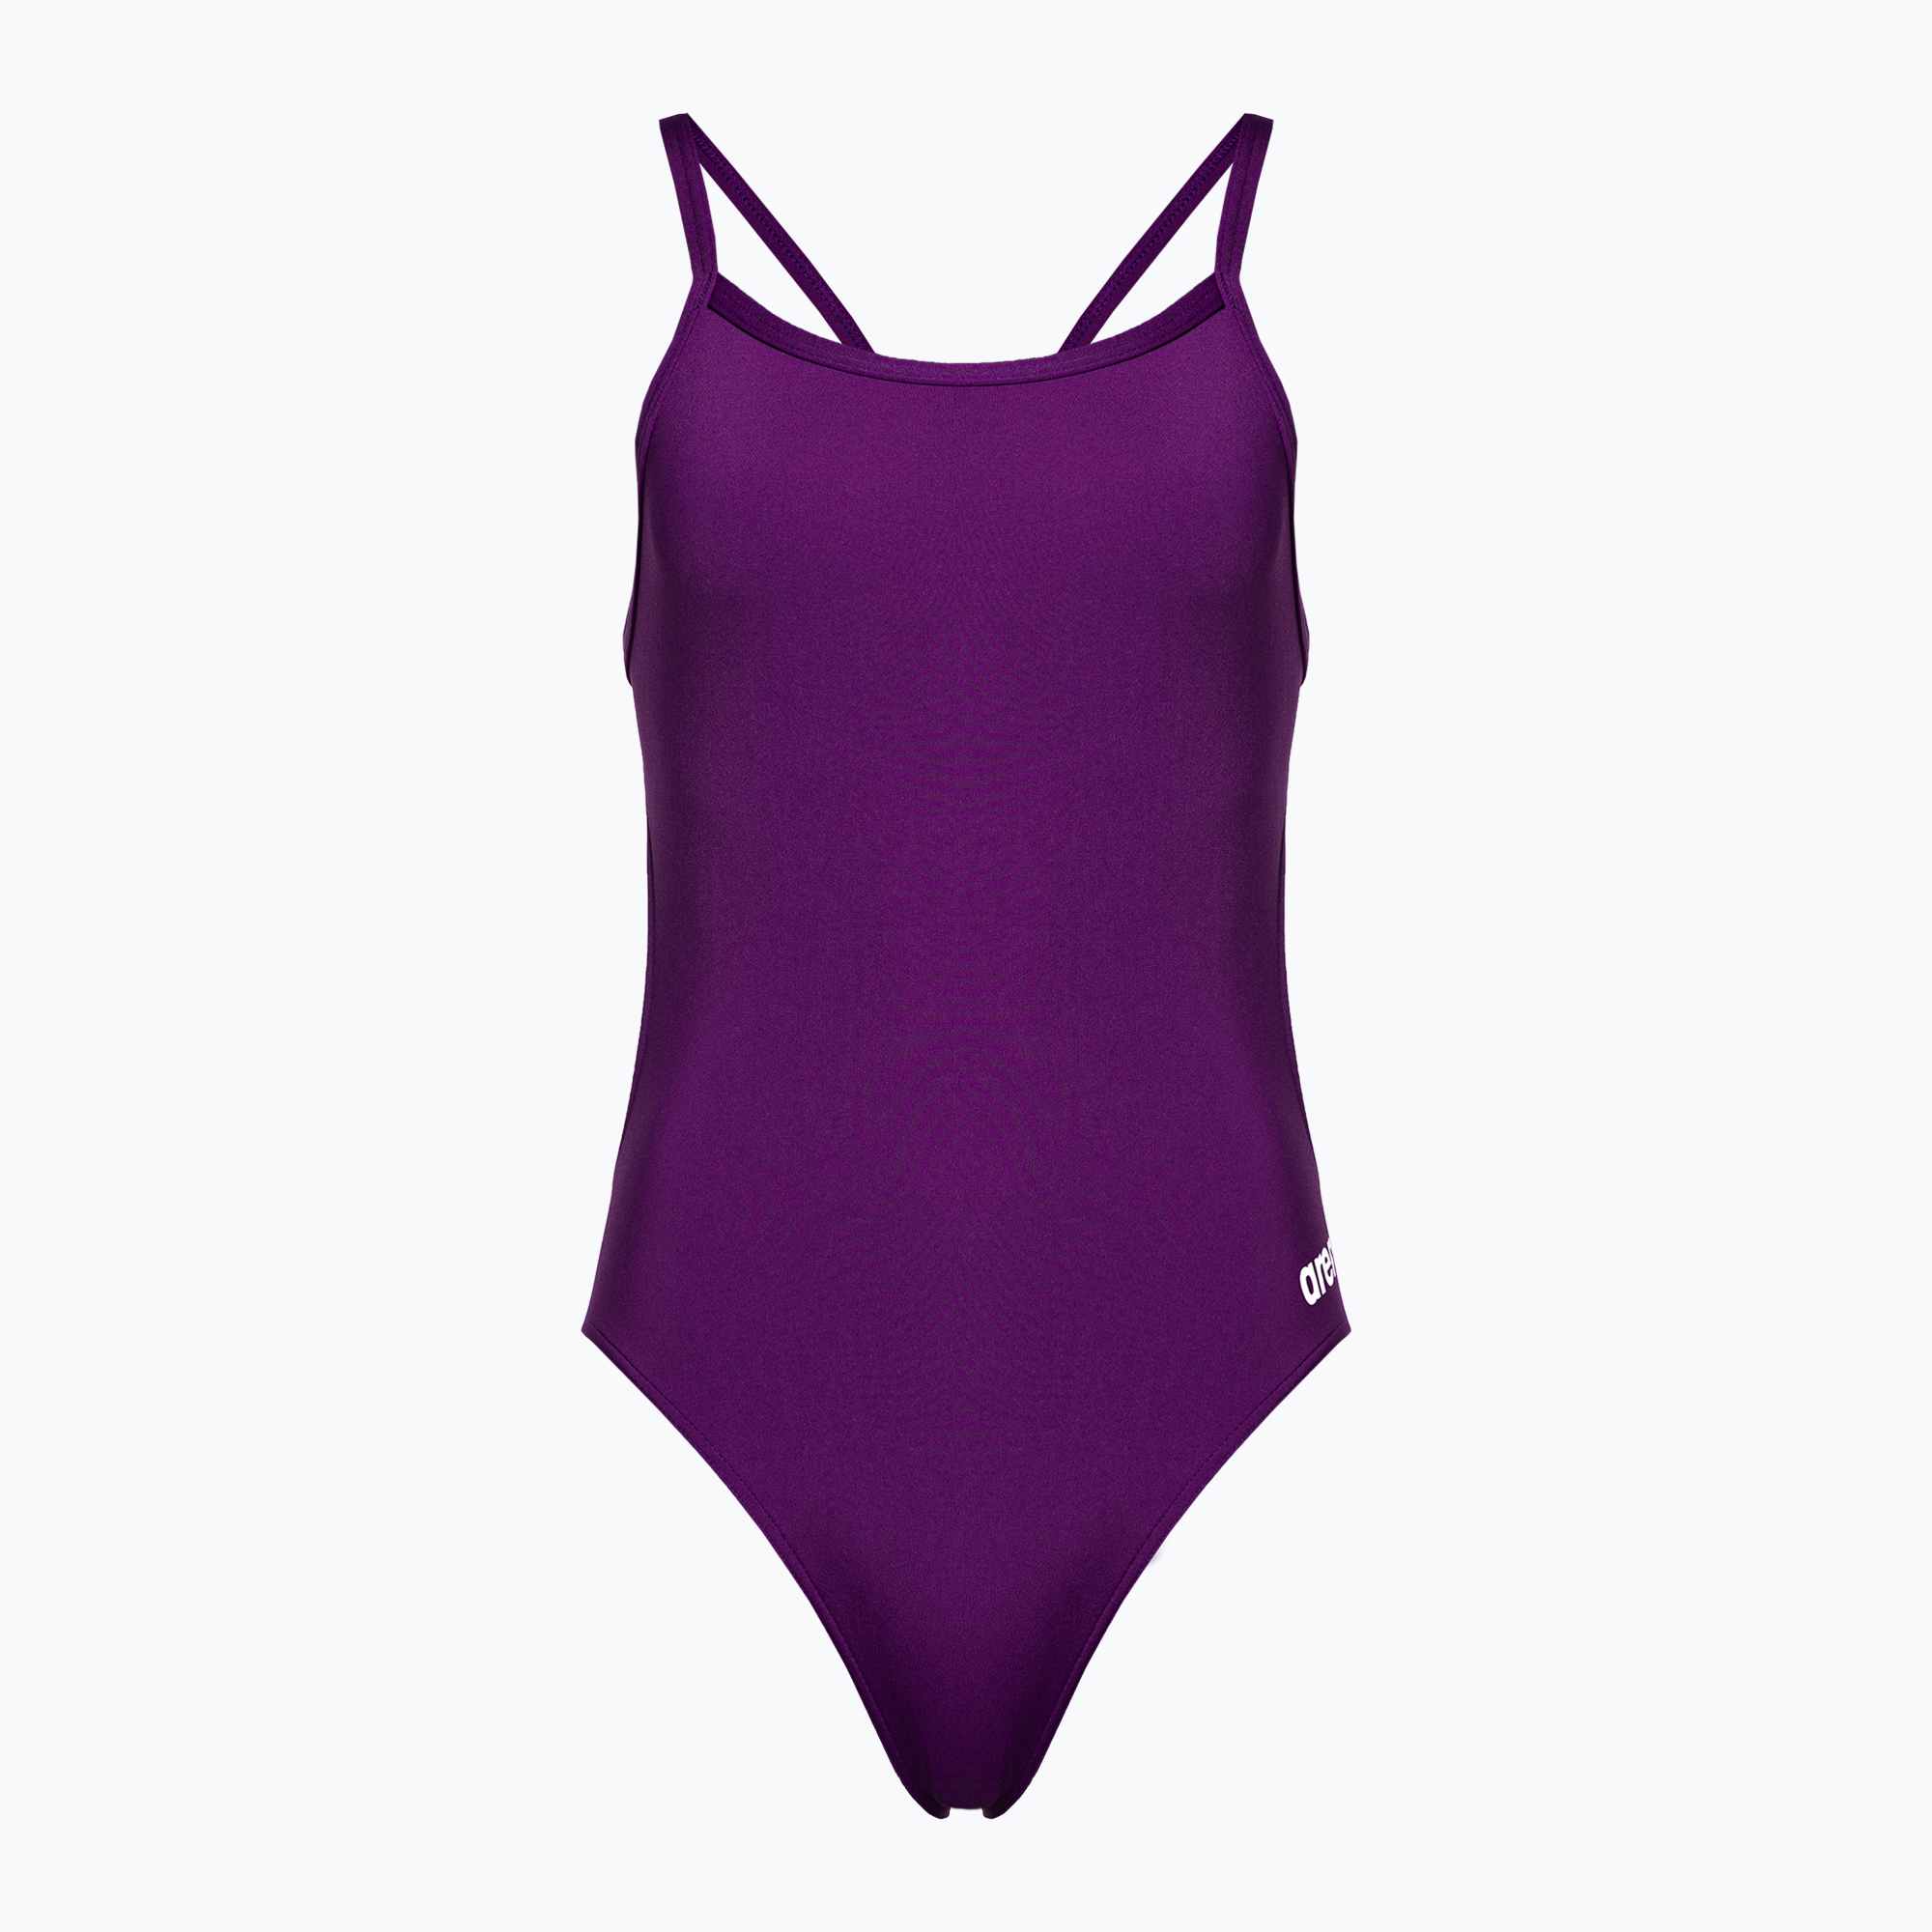 Дамски бански костюм от една част arena Team Challenge Solid purple 004766